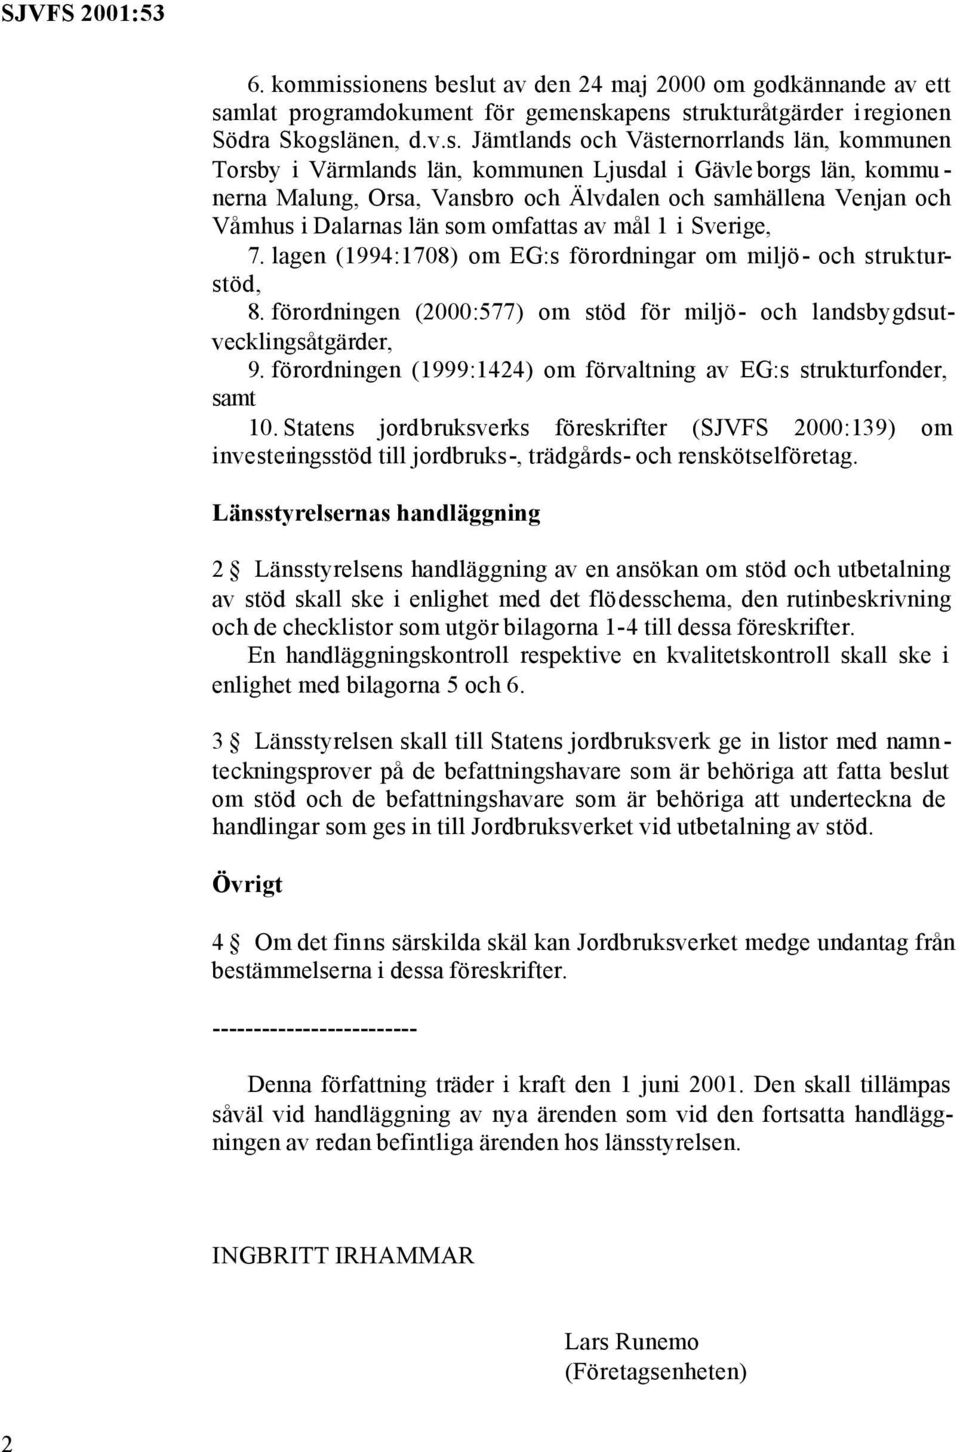 beslut av den 24 maj 2000 om godkännande av ett samlat programdokument för gemenskapens strukturåtgärder iregionen Södra Skogslänen, d.v.s. Jämtlands och Västernorrlands län, kommunen Torsby i